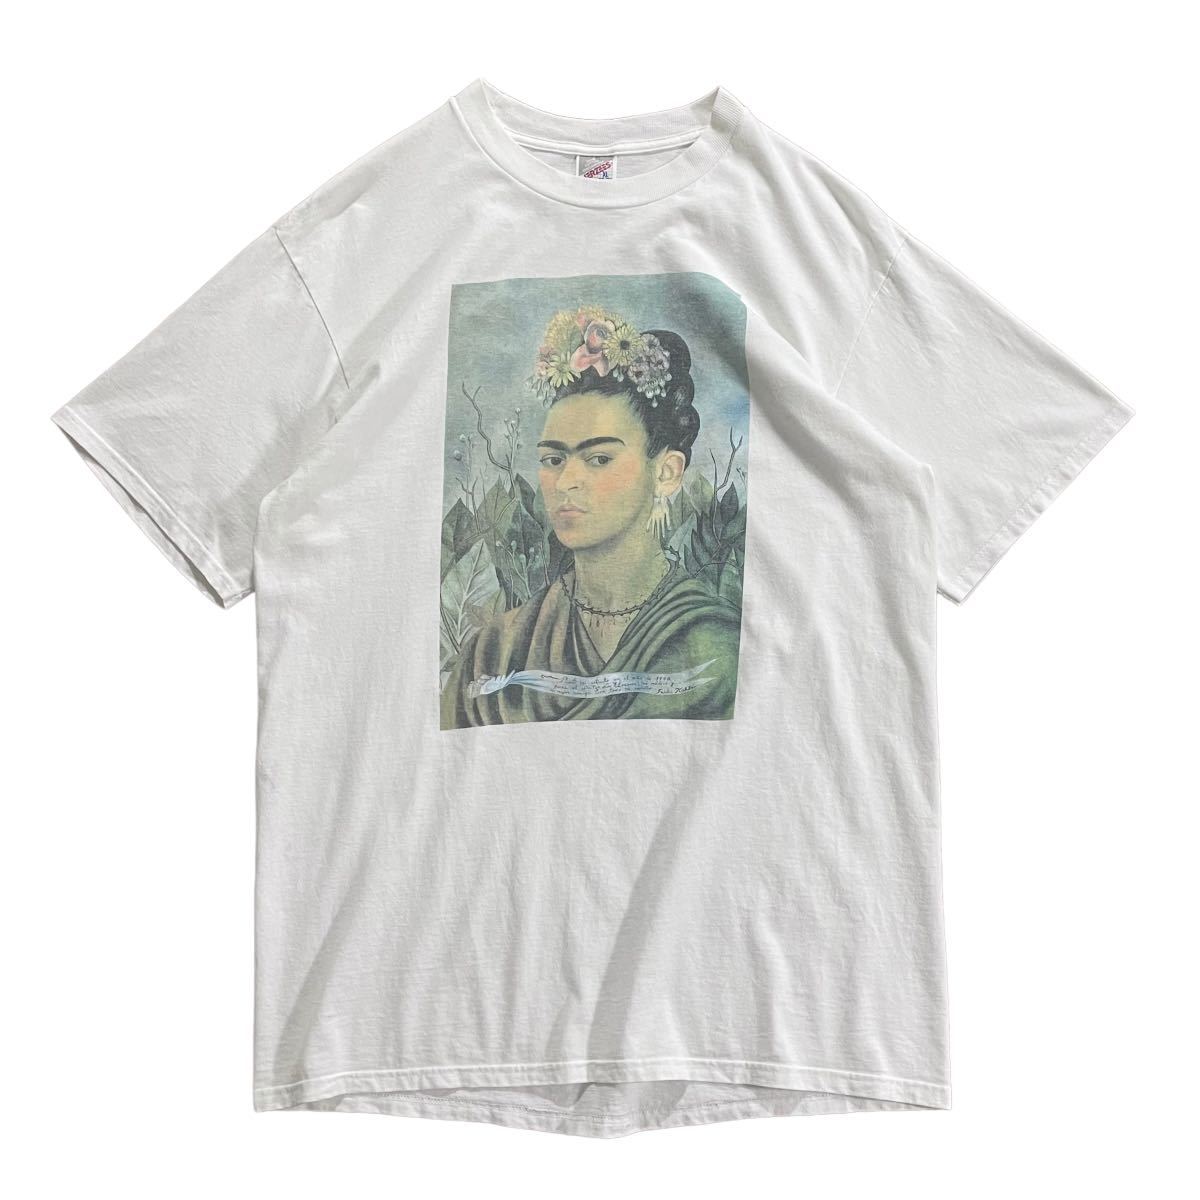 アートTee【90s Frida Kahlo アート プリント Tシャツ XL】JERZEES フリーダ・カーロ フォト ESCHER ピカソ バンド  USA製 ヒマワリ ゴッホ